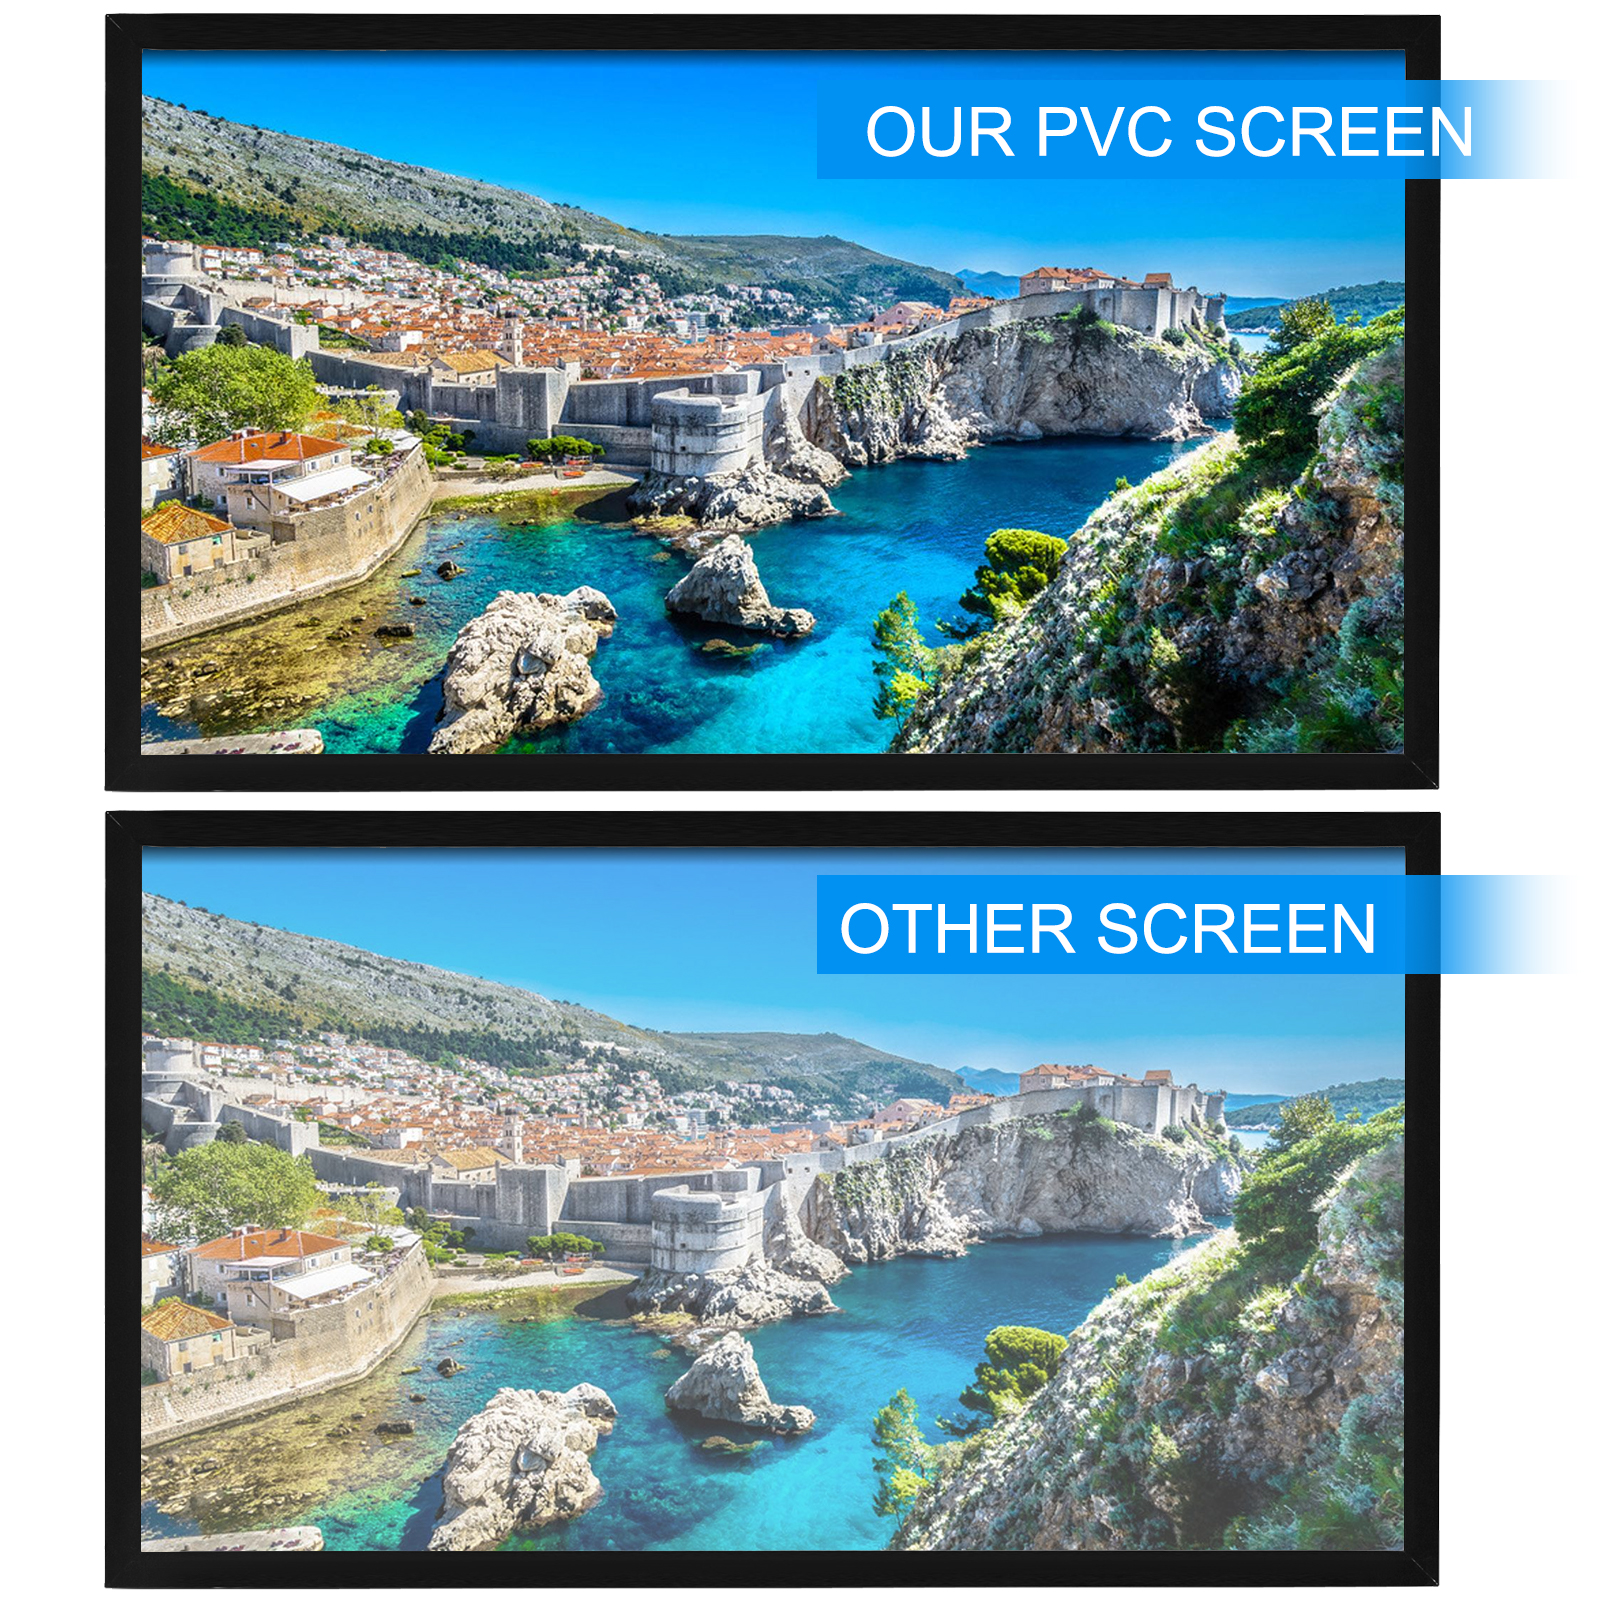 Променевий екран VEVOR 233 x 136 см, розмір діагоналі проекційного екрану 254 см, стельове кріплення екрану з ПВХ, проекційний екран з роздільною здатністю екрану 16 : 9, для заходів на відкритому повітрі